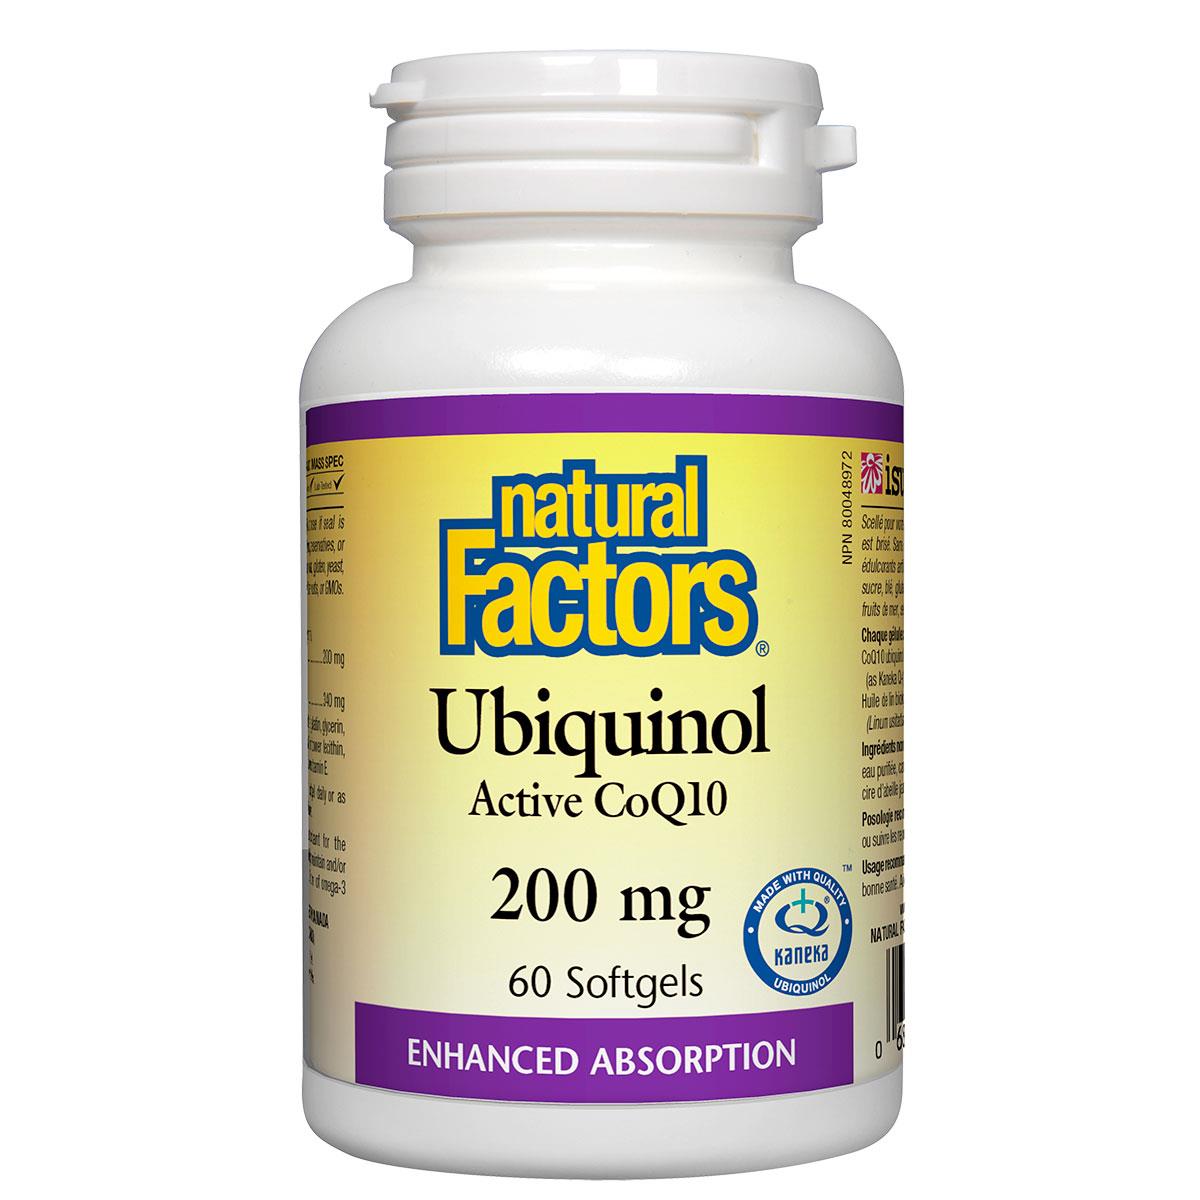 Natural Factors Ubiquinol Active CoQ10, 200mg, 60 softgels